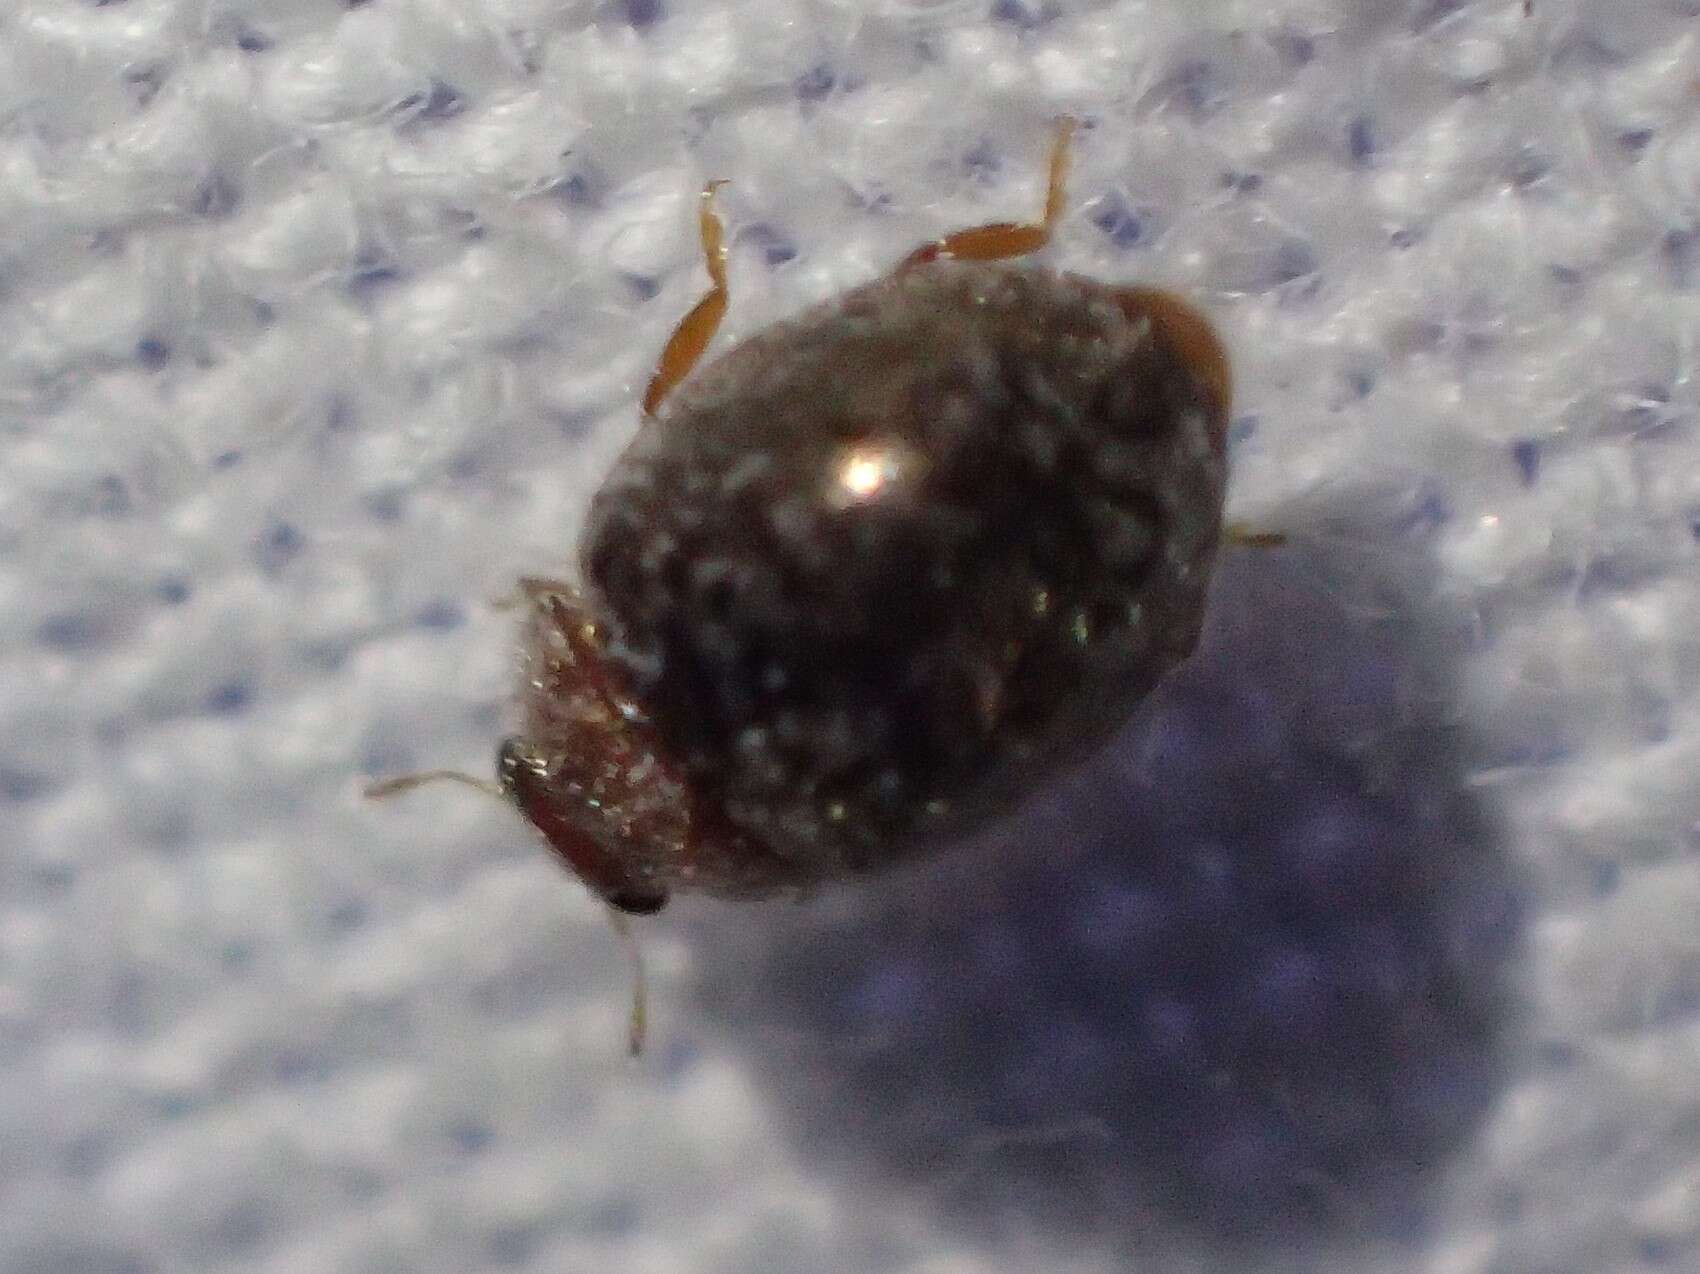 Image of Lady beetle